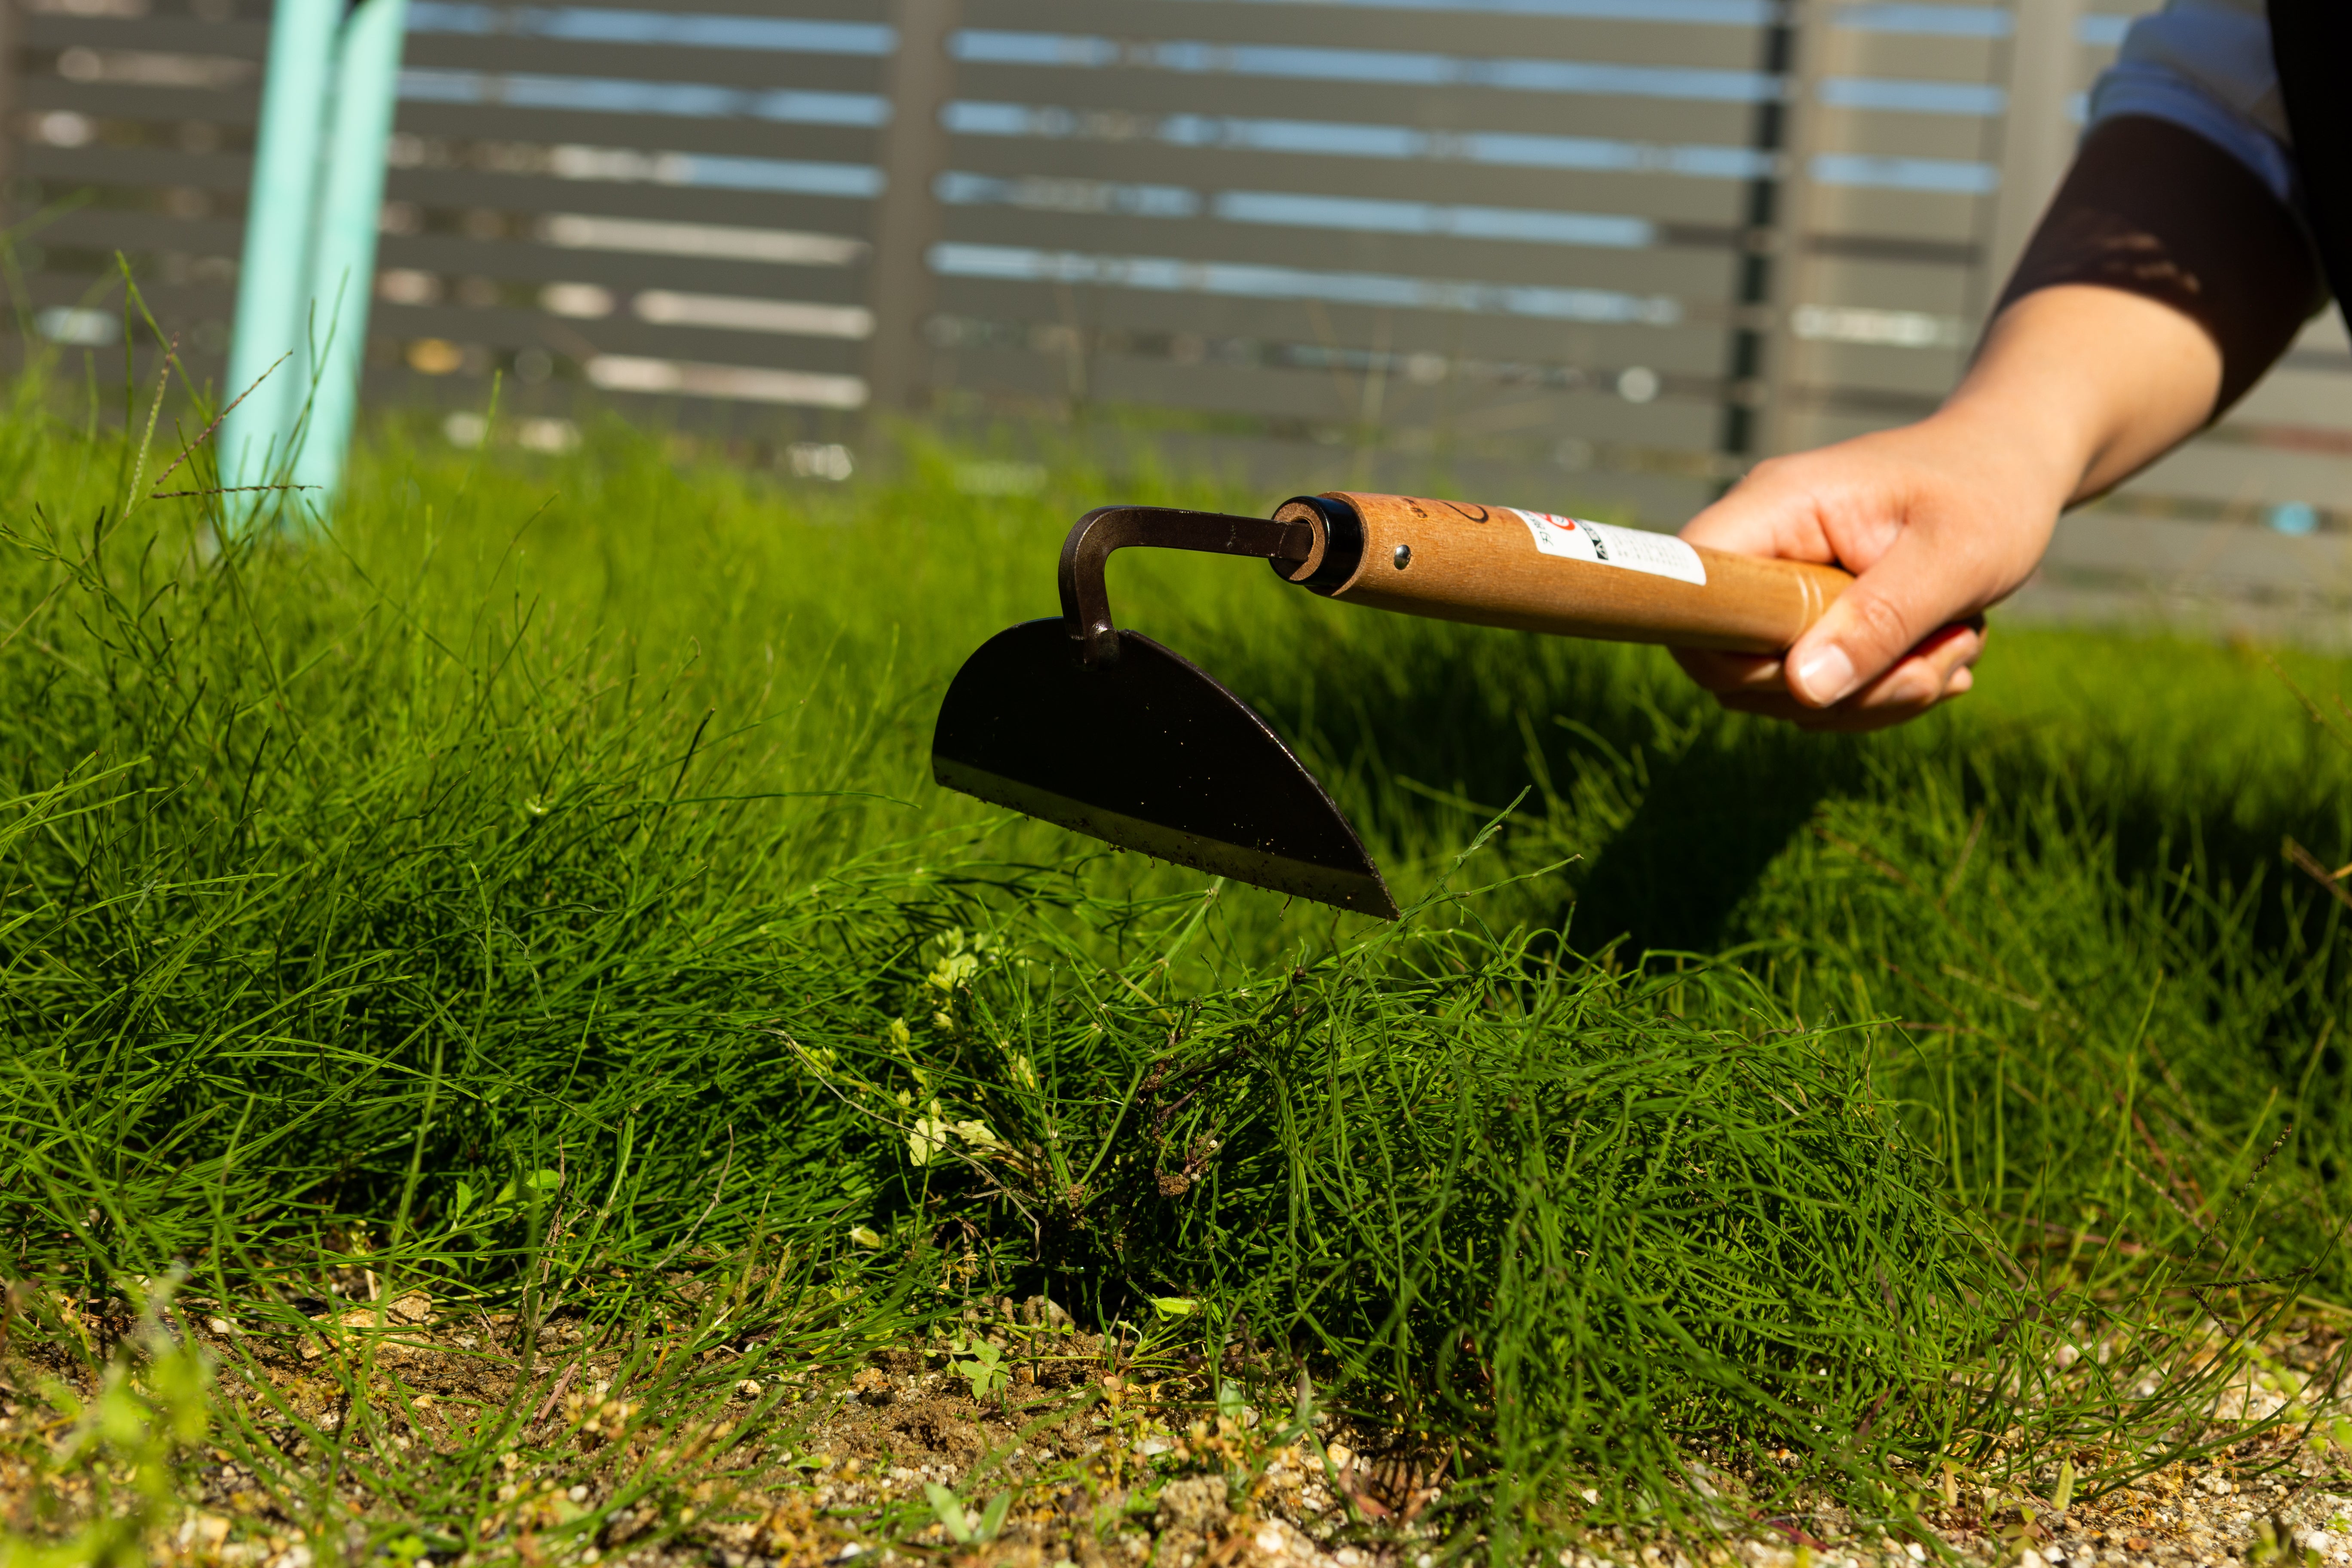 Nasu Flat Scraper (One-Handed Cut Grass Cutter) - Japanese Gardening Tools